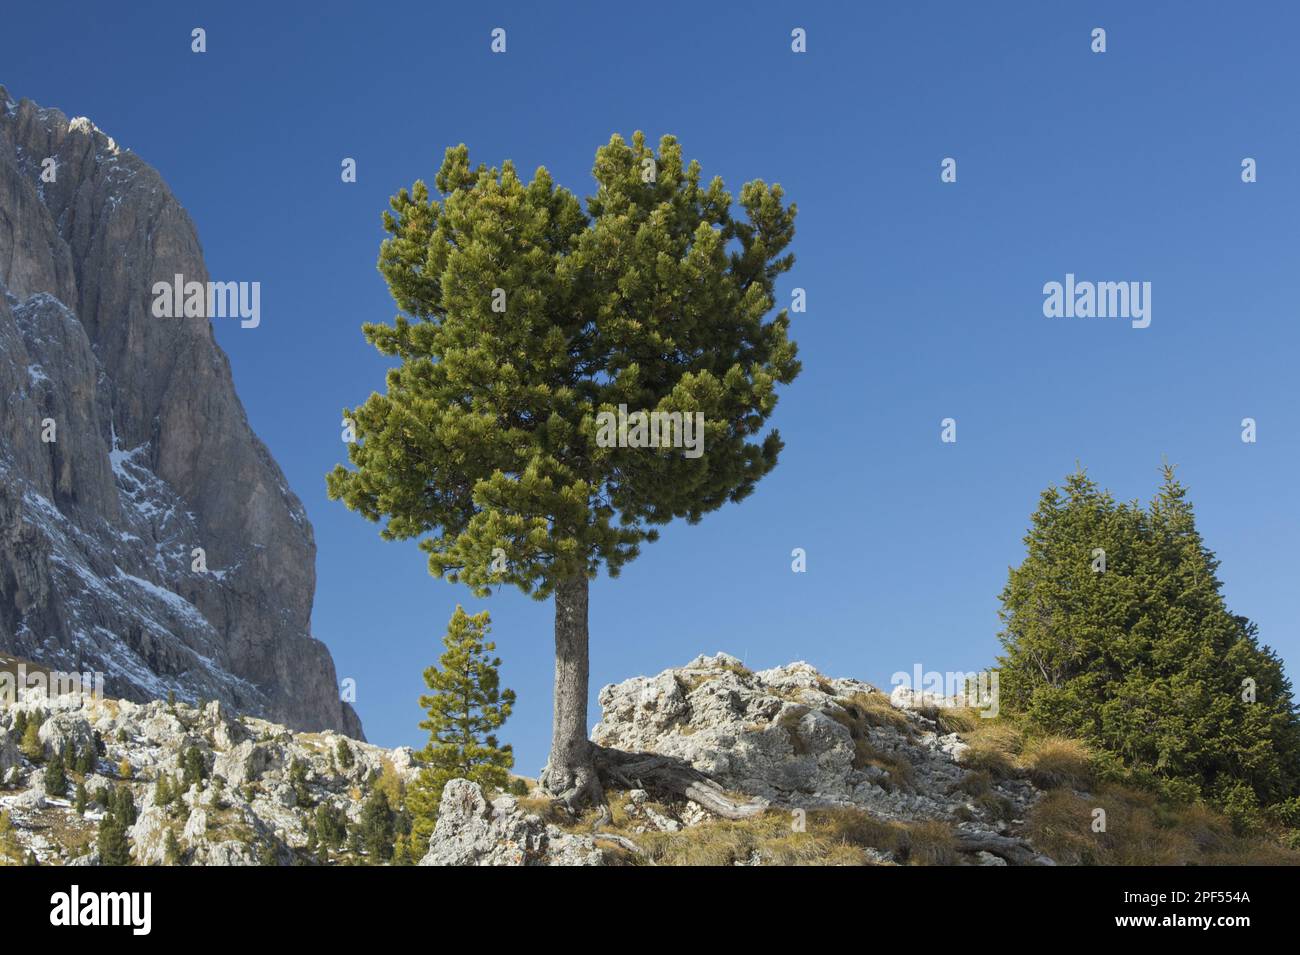 Arolla Pine (Pinus cembra) habit, growing on rocks in mountain habitat, Dolomites, Italian Alps, Italy Stock Photo